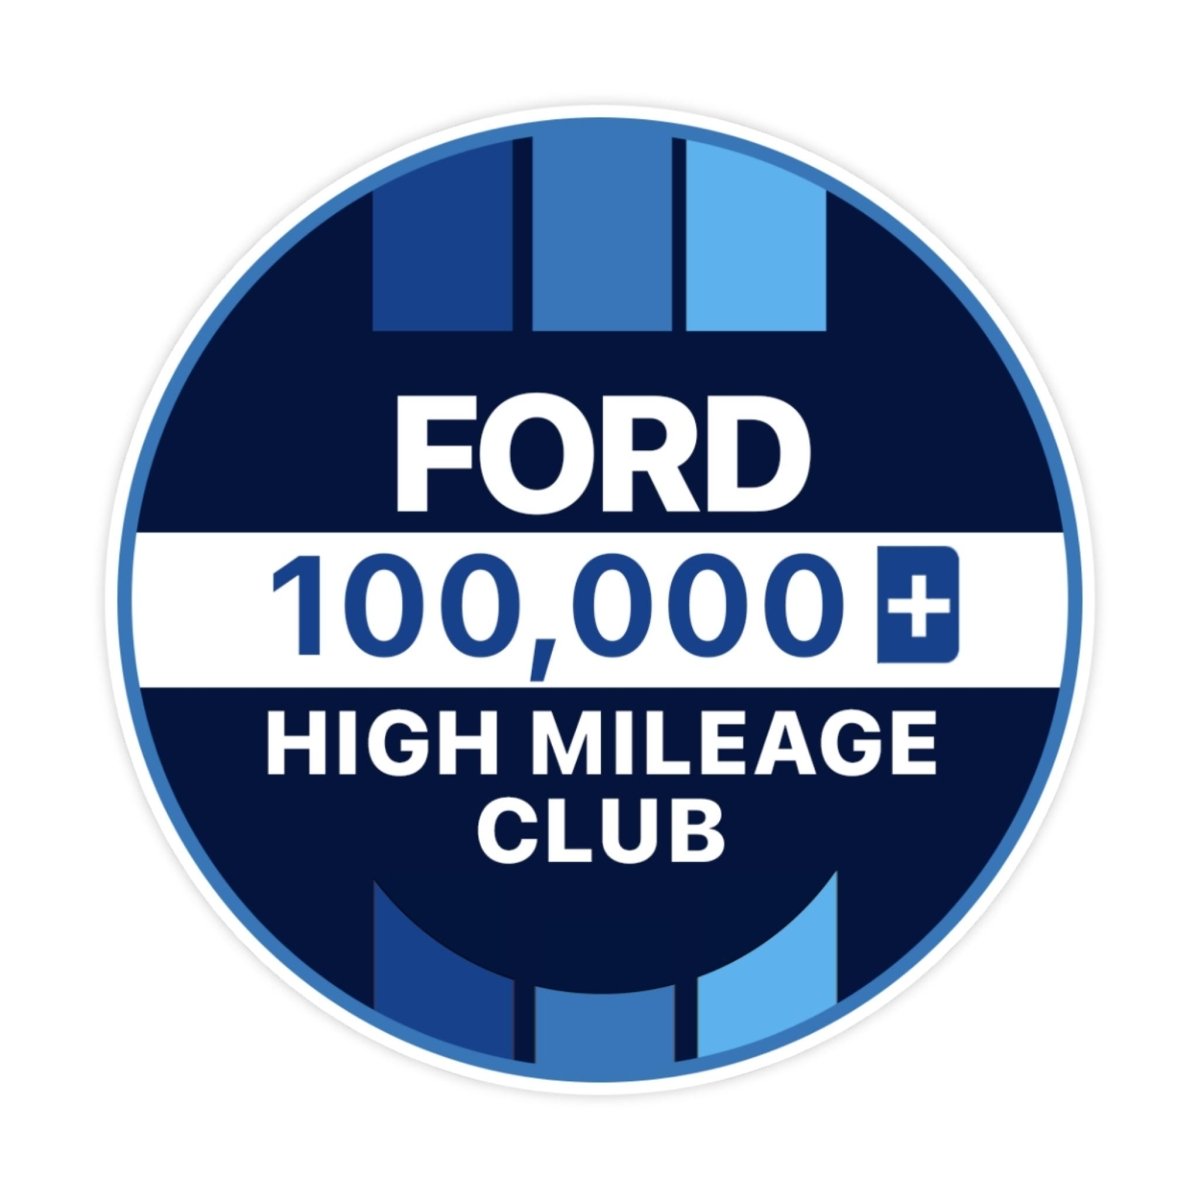 Ford 500k High Mileage Club Sticker - stickerbullFord 500k High Mileage Club StickerRetail StickerstickerbullstickerbullTaylor_Ford100k [#118]100kFord 500k High Mileage Club Sticker